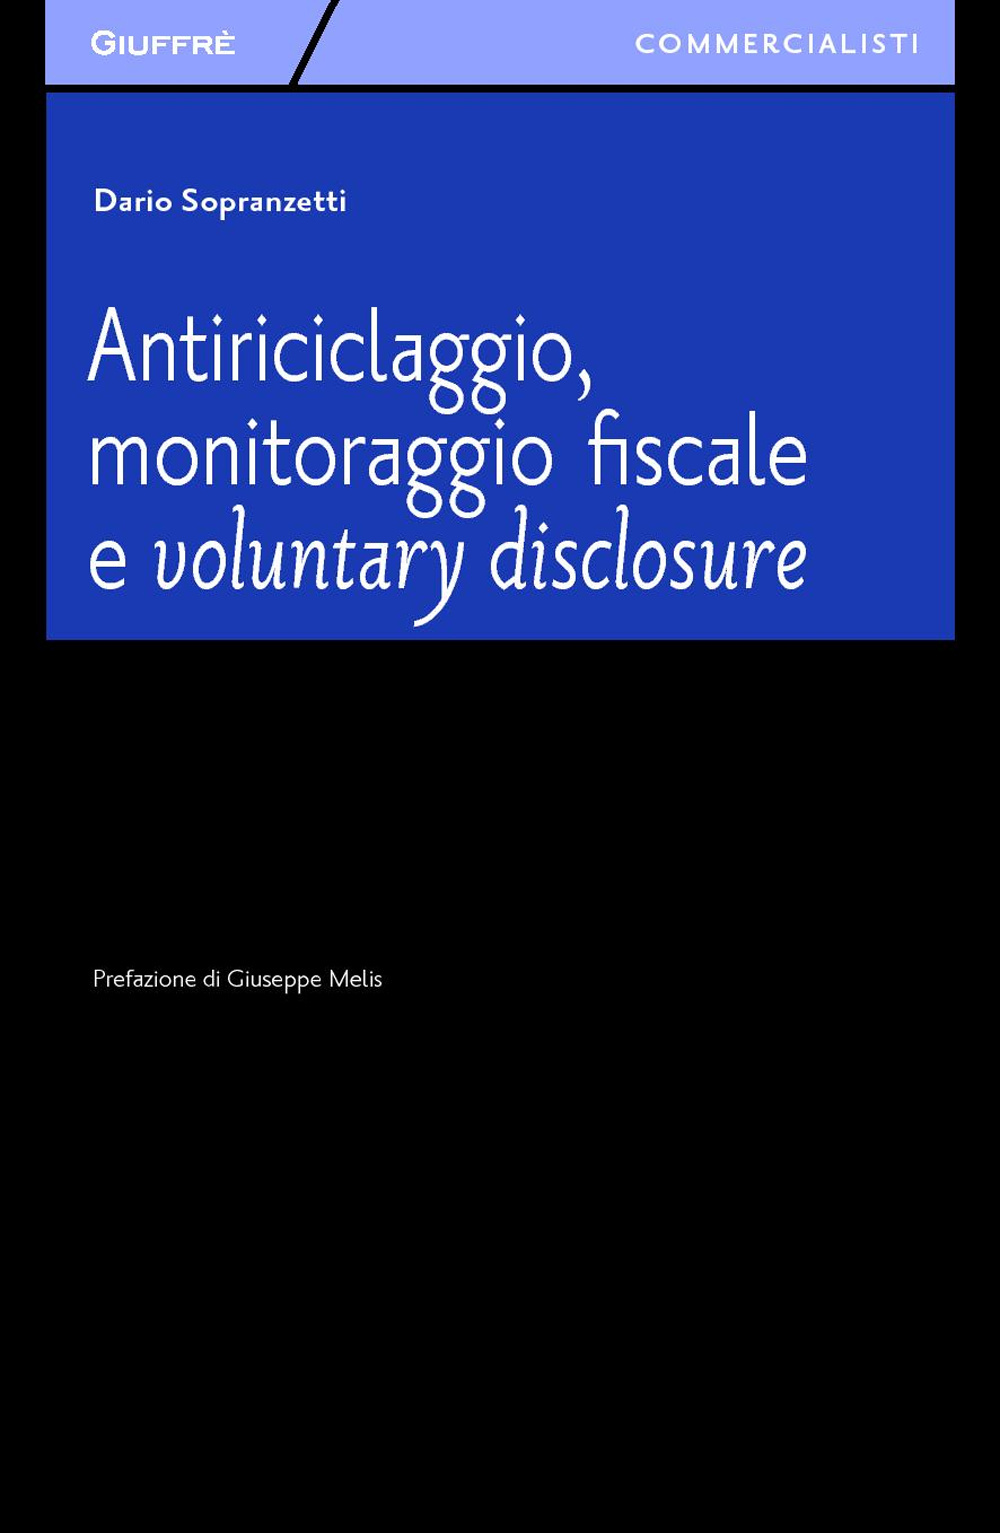 Antiriciclaggio, monitoraggio fiscale e voluntary disclosure